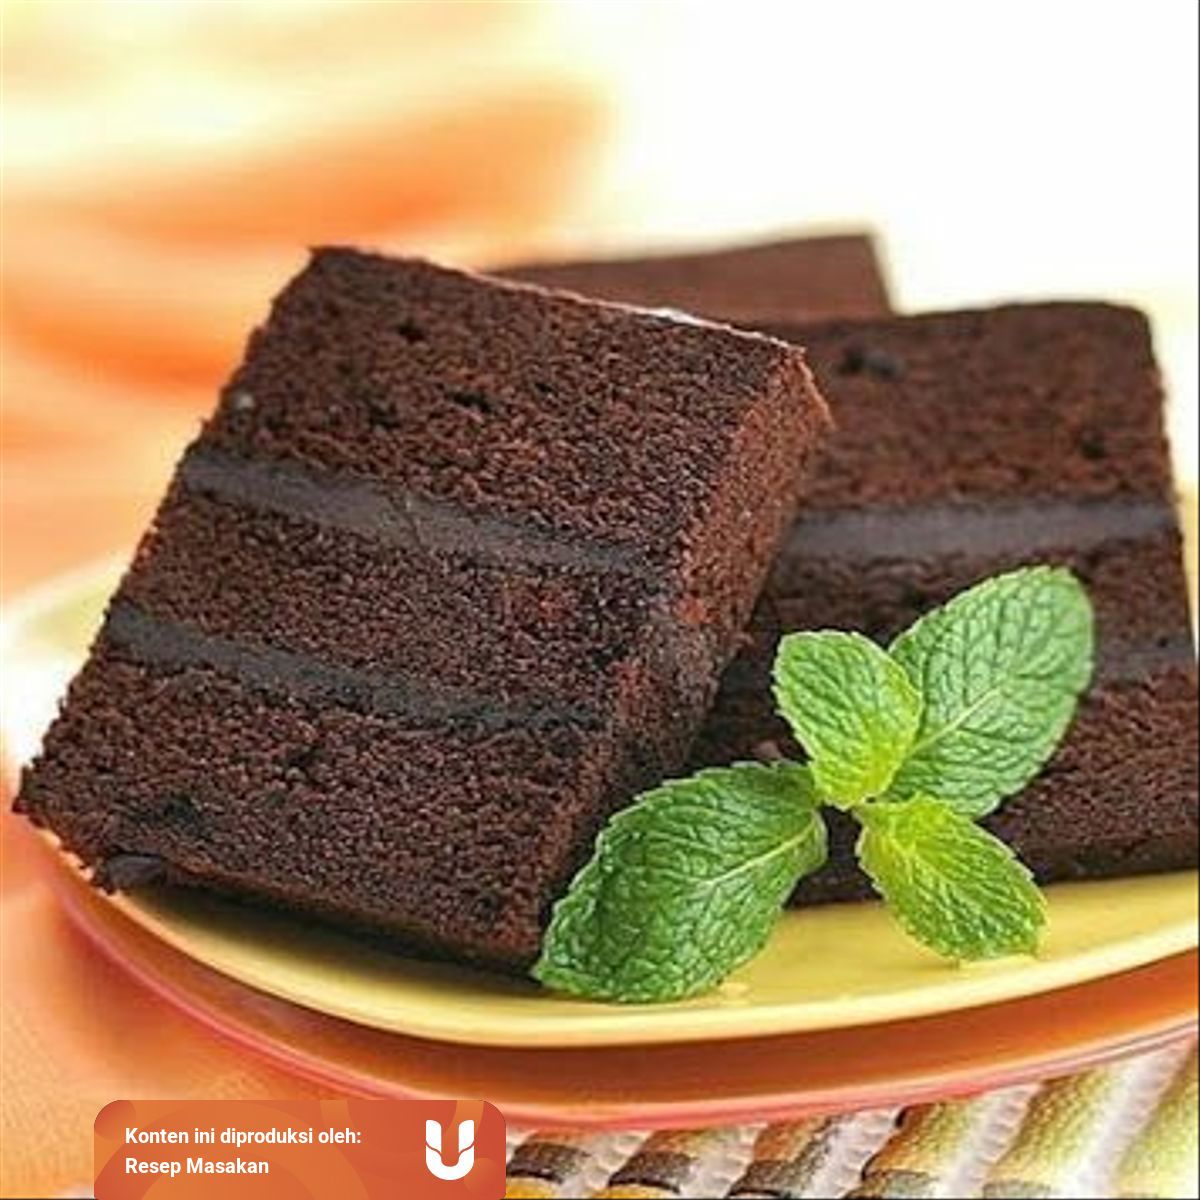 Resep Masakan Brownies Kukus Chocolatos Tanpa Mixer Anak Kos Juga Bisa Kumparan Com